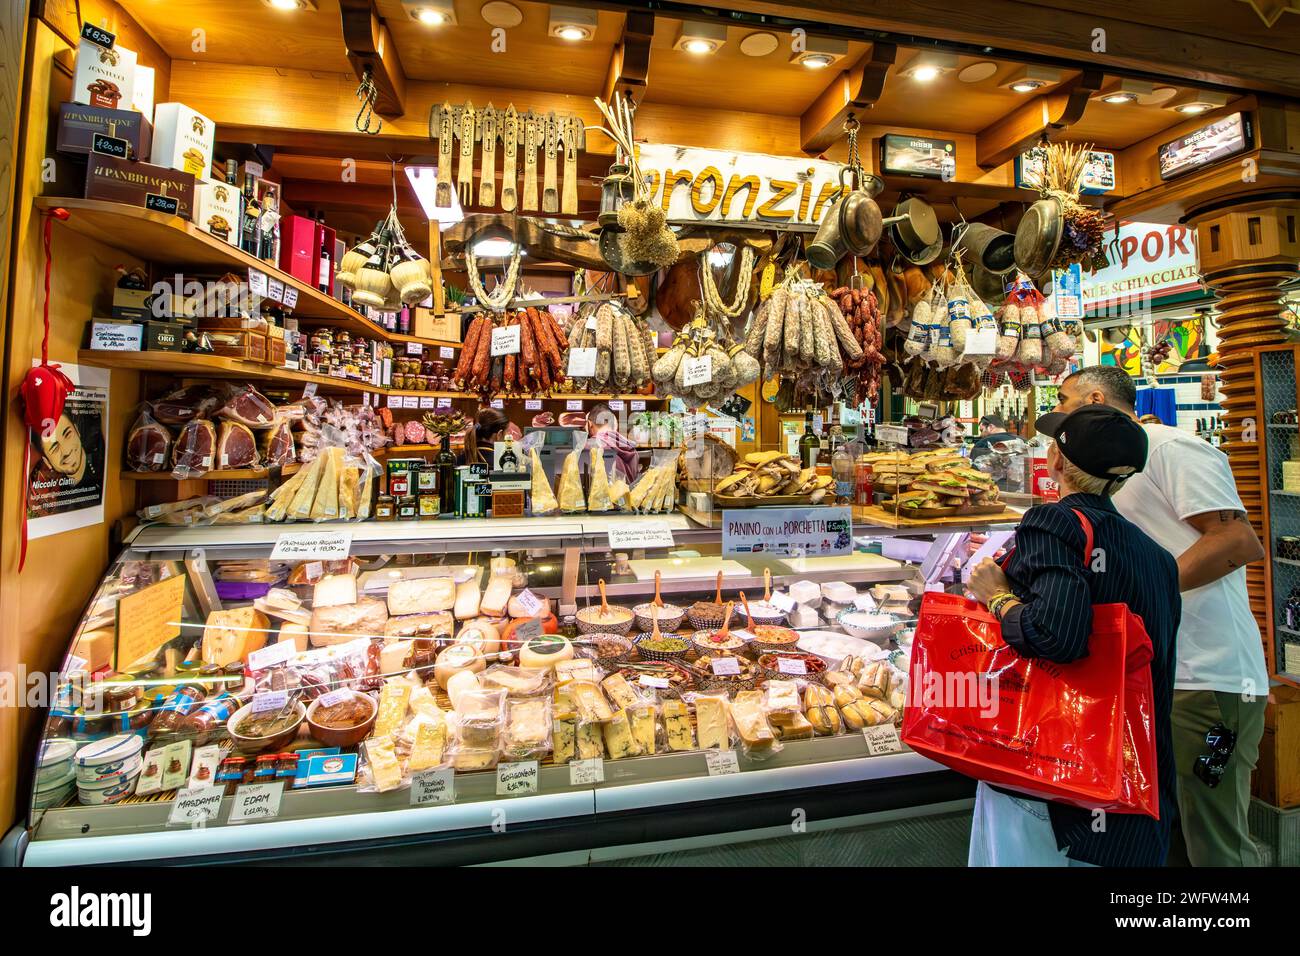 Les gens font des courses dans une épicerie fine pour la charcuterie et le fromage à Florence Mercato Centrale, un marché populaire de produits frais et de produits frais à Florence, en Italie Banque D'Images